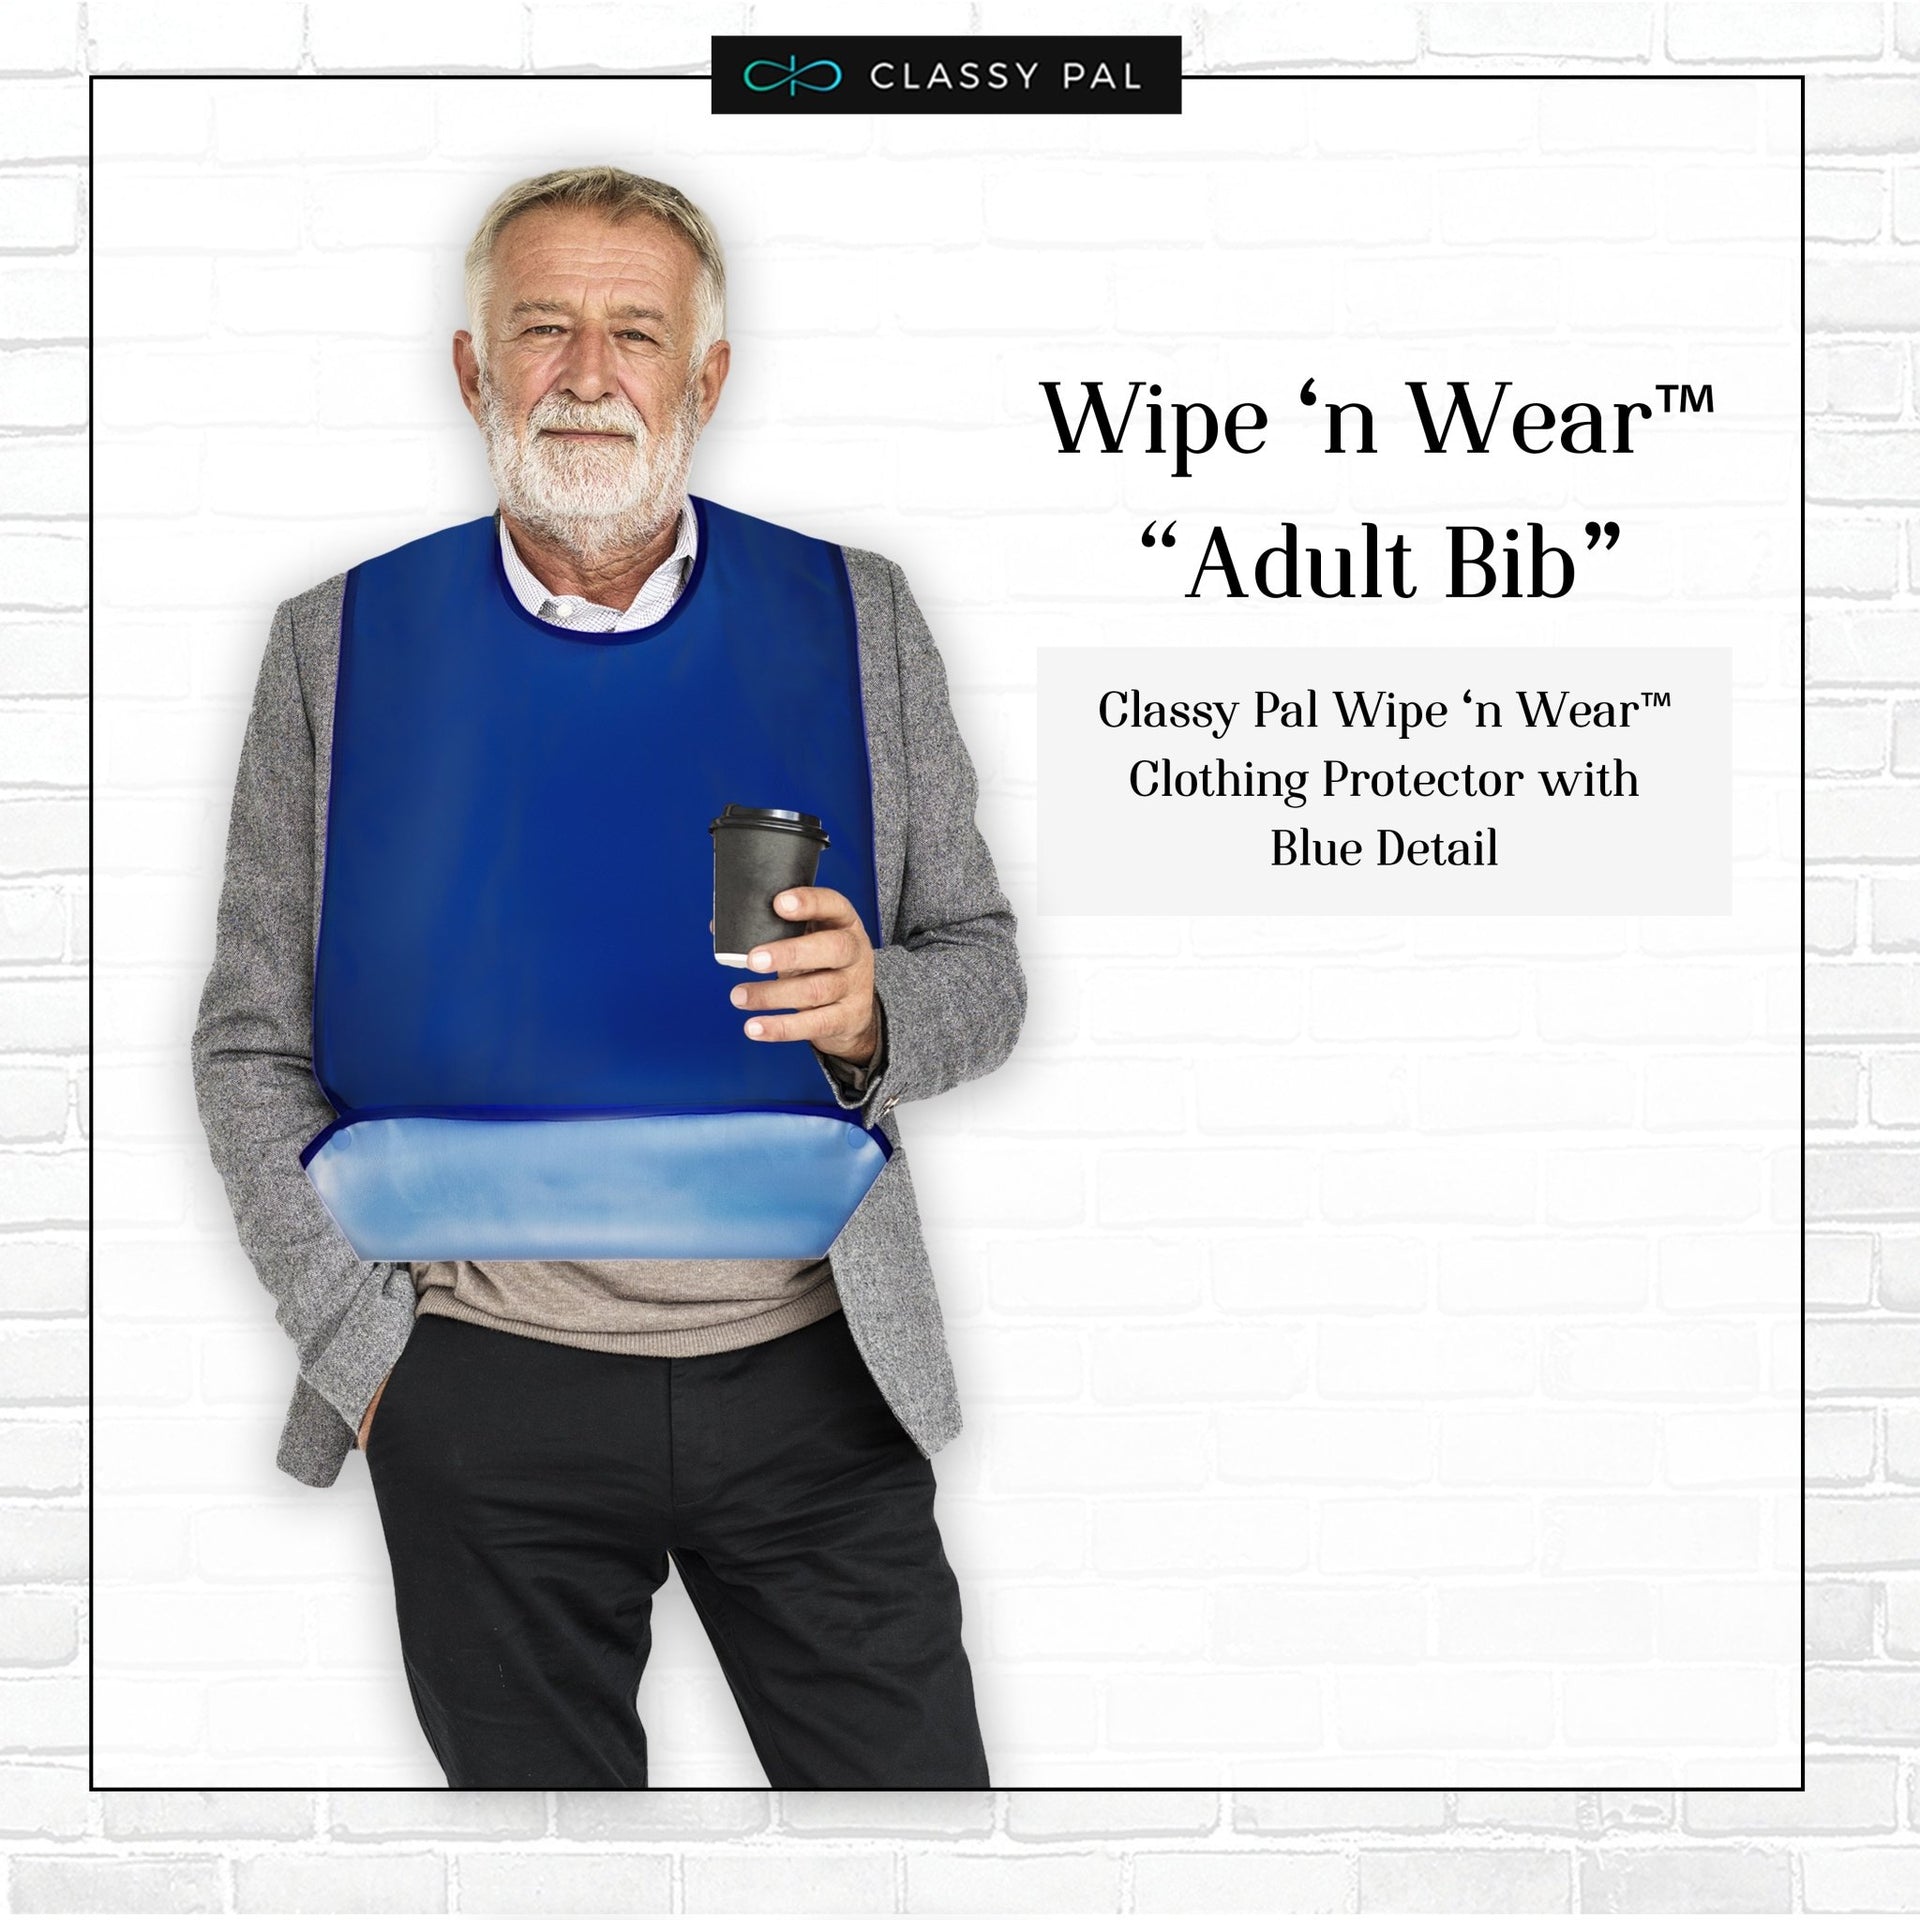 Wipe 'n Wear™ Adult Bib Blue (1 Pack) - Classy Pal Plain Wipe 'n Wear Adult Bibs